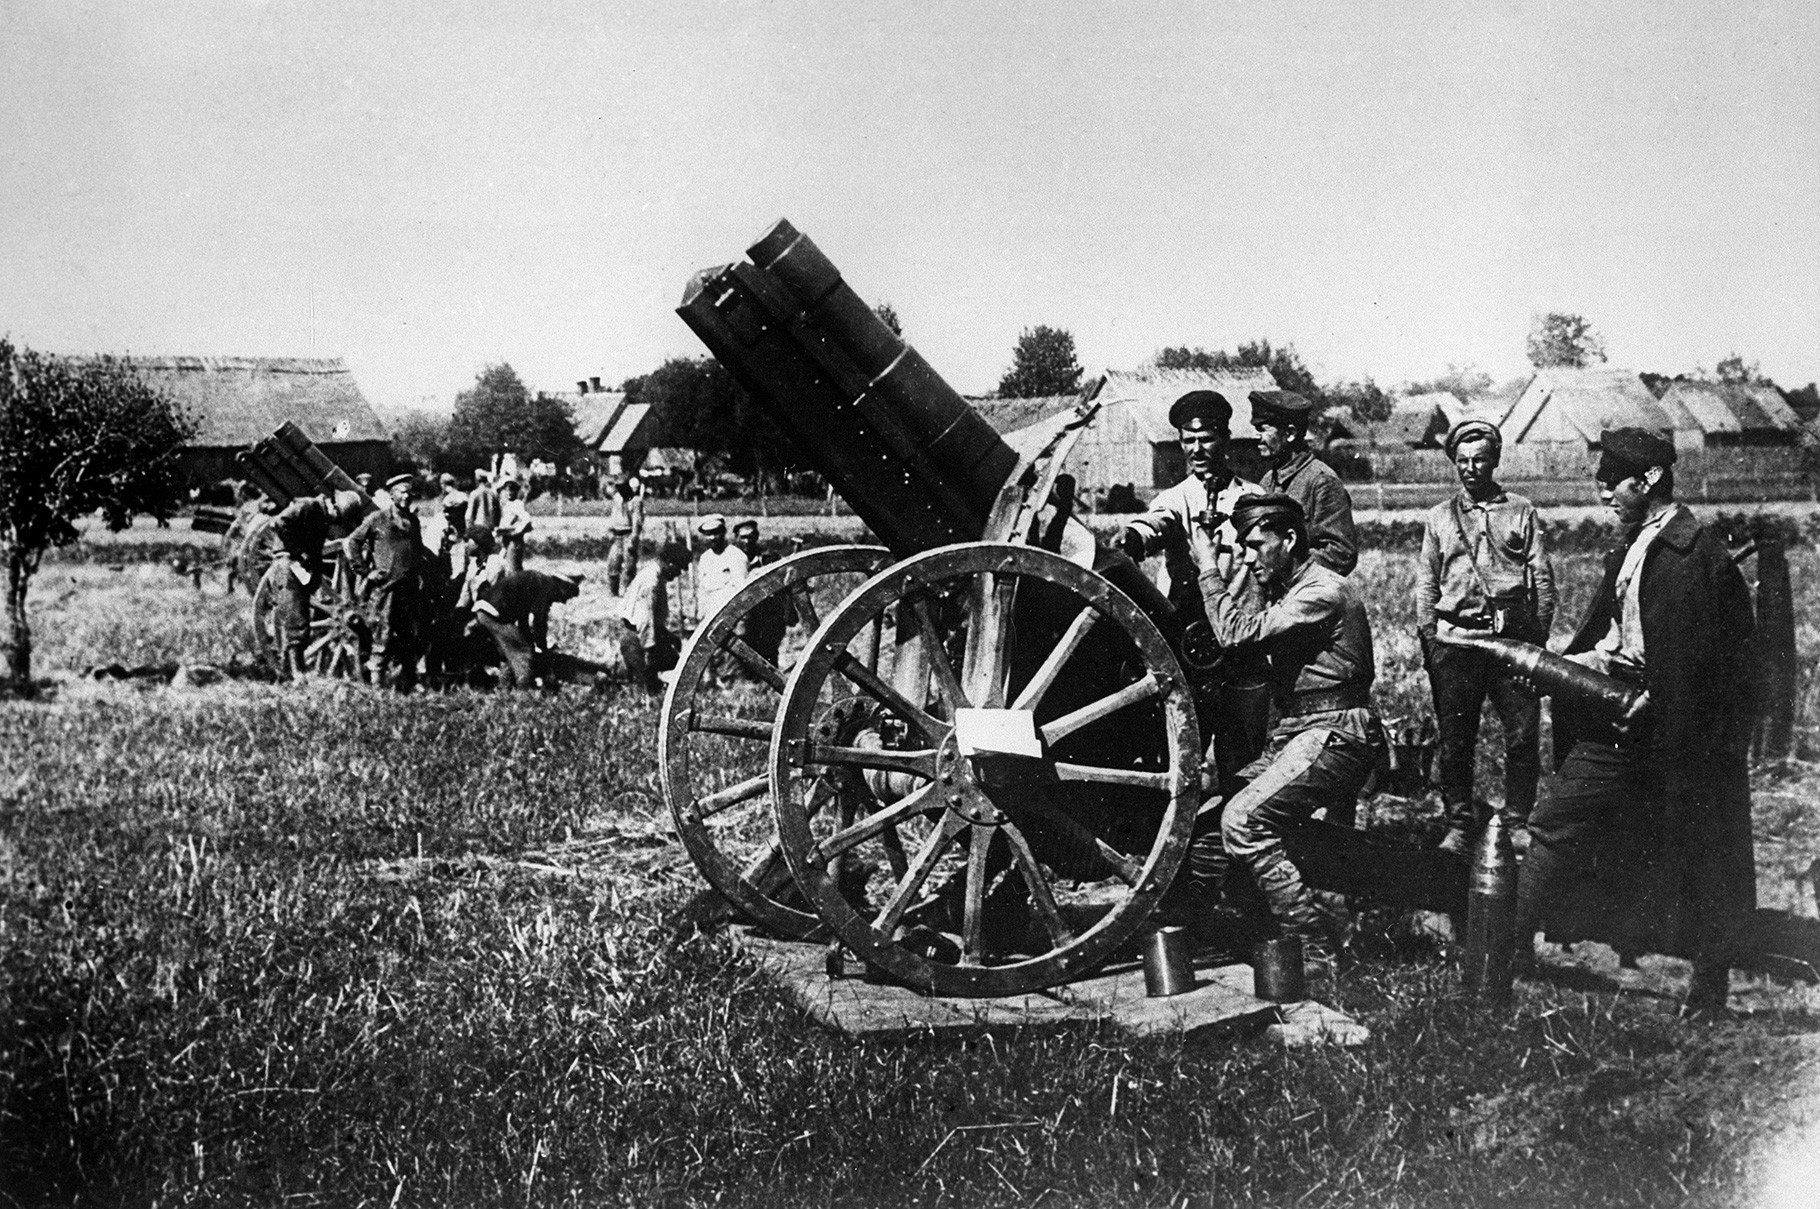 L'artillerie soviétique pendant la guerre soviéto-polonaise. Ukraine, 1920.